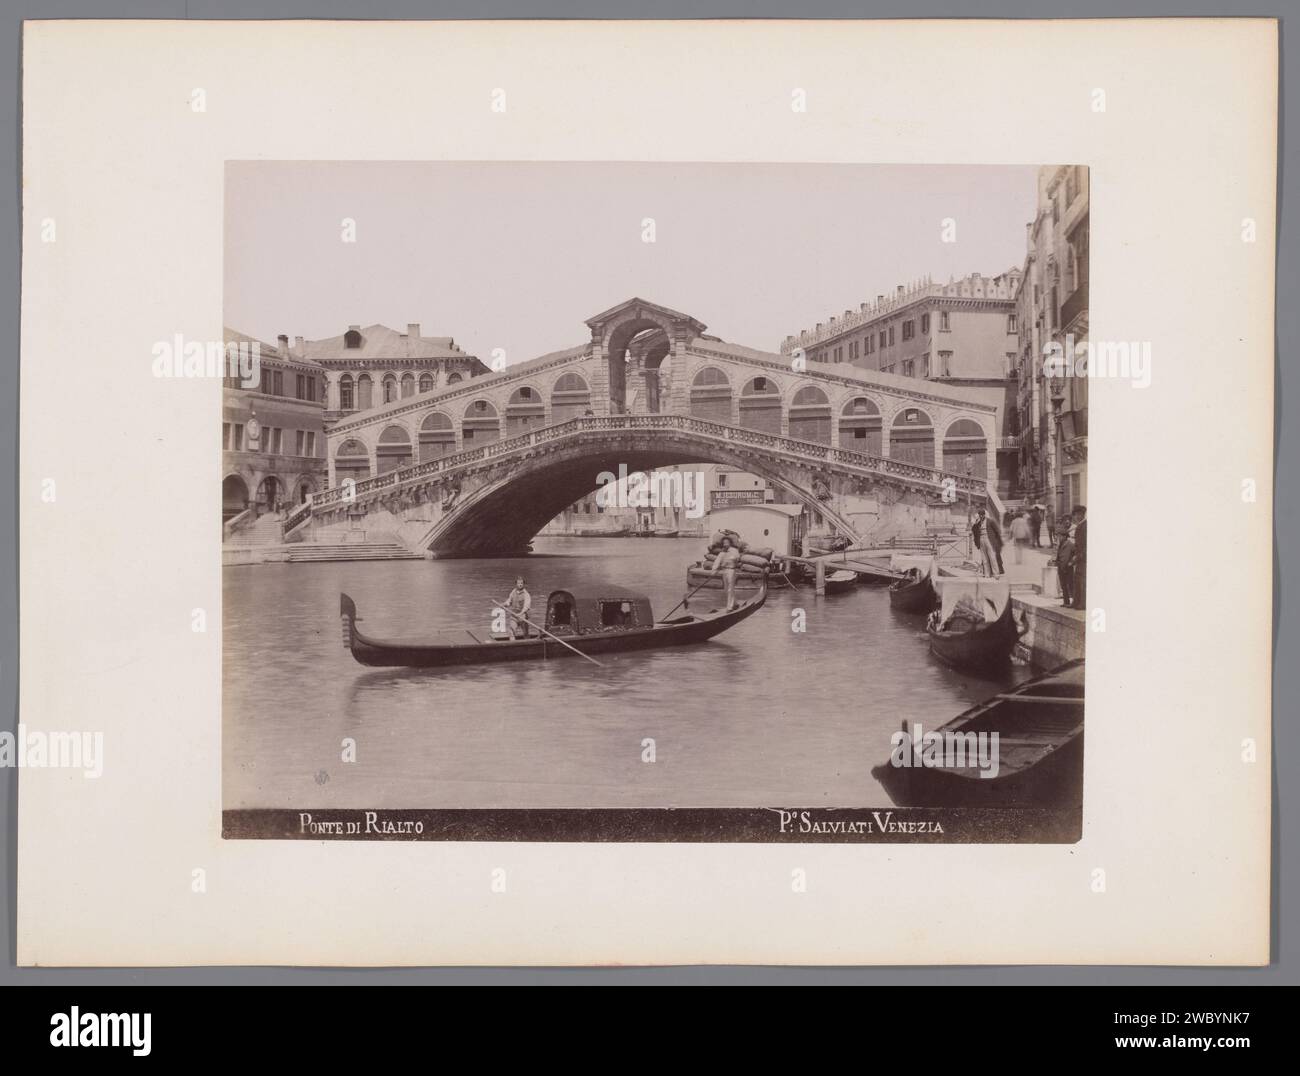 Gondels sur le Canal Grande pour le Rialtobrug à Venise, Paolo Salviati, 1860 - 1870 photographie papier de Venise. pont d'impression d'albumen en carton dans la ville à travers la rivière, canal, etc. Gondole Rialtobrug Banque D'Images